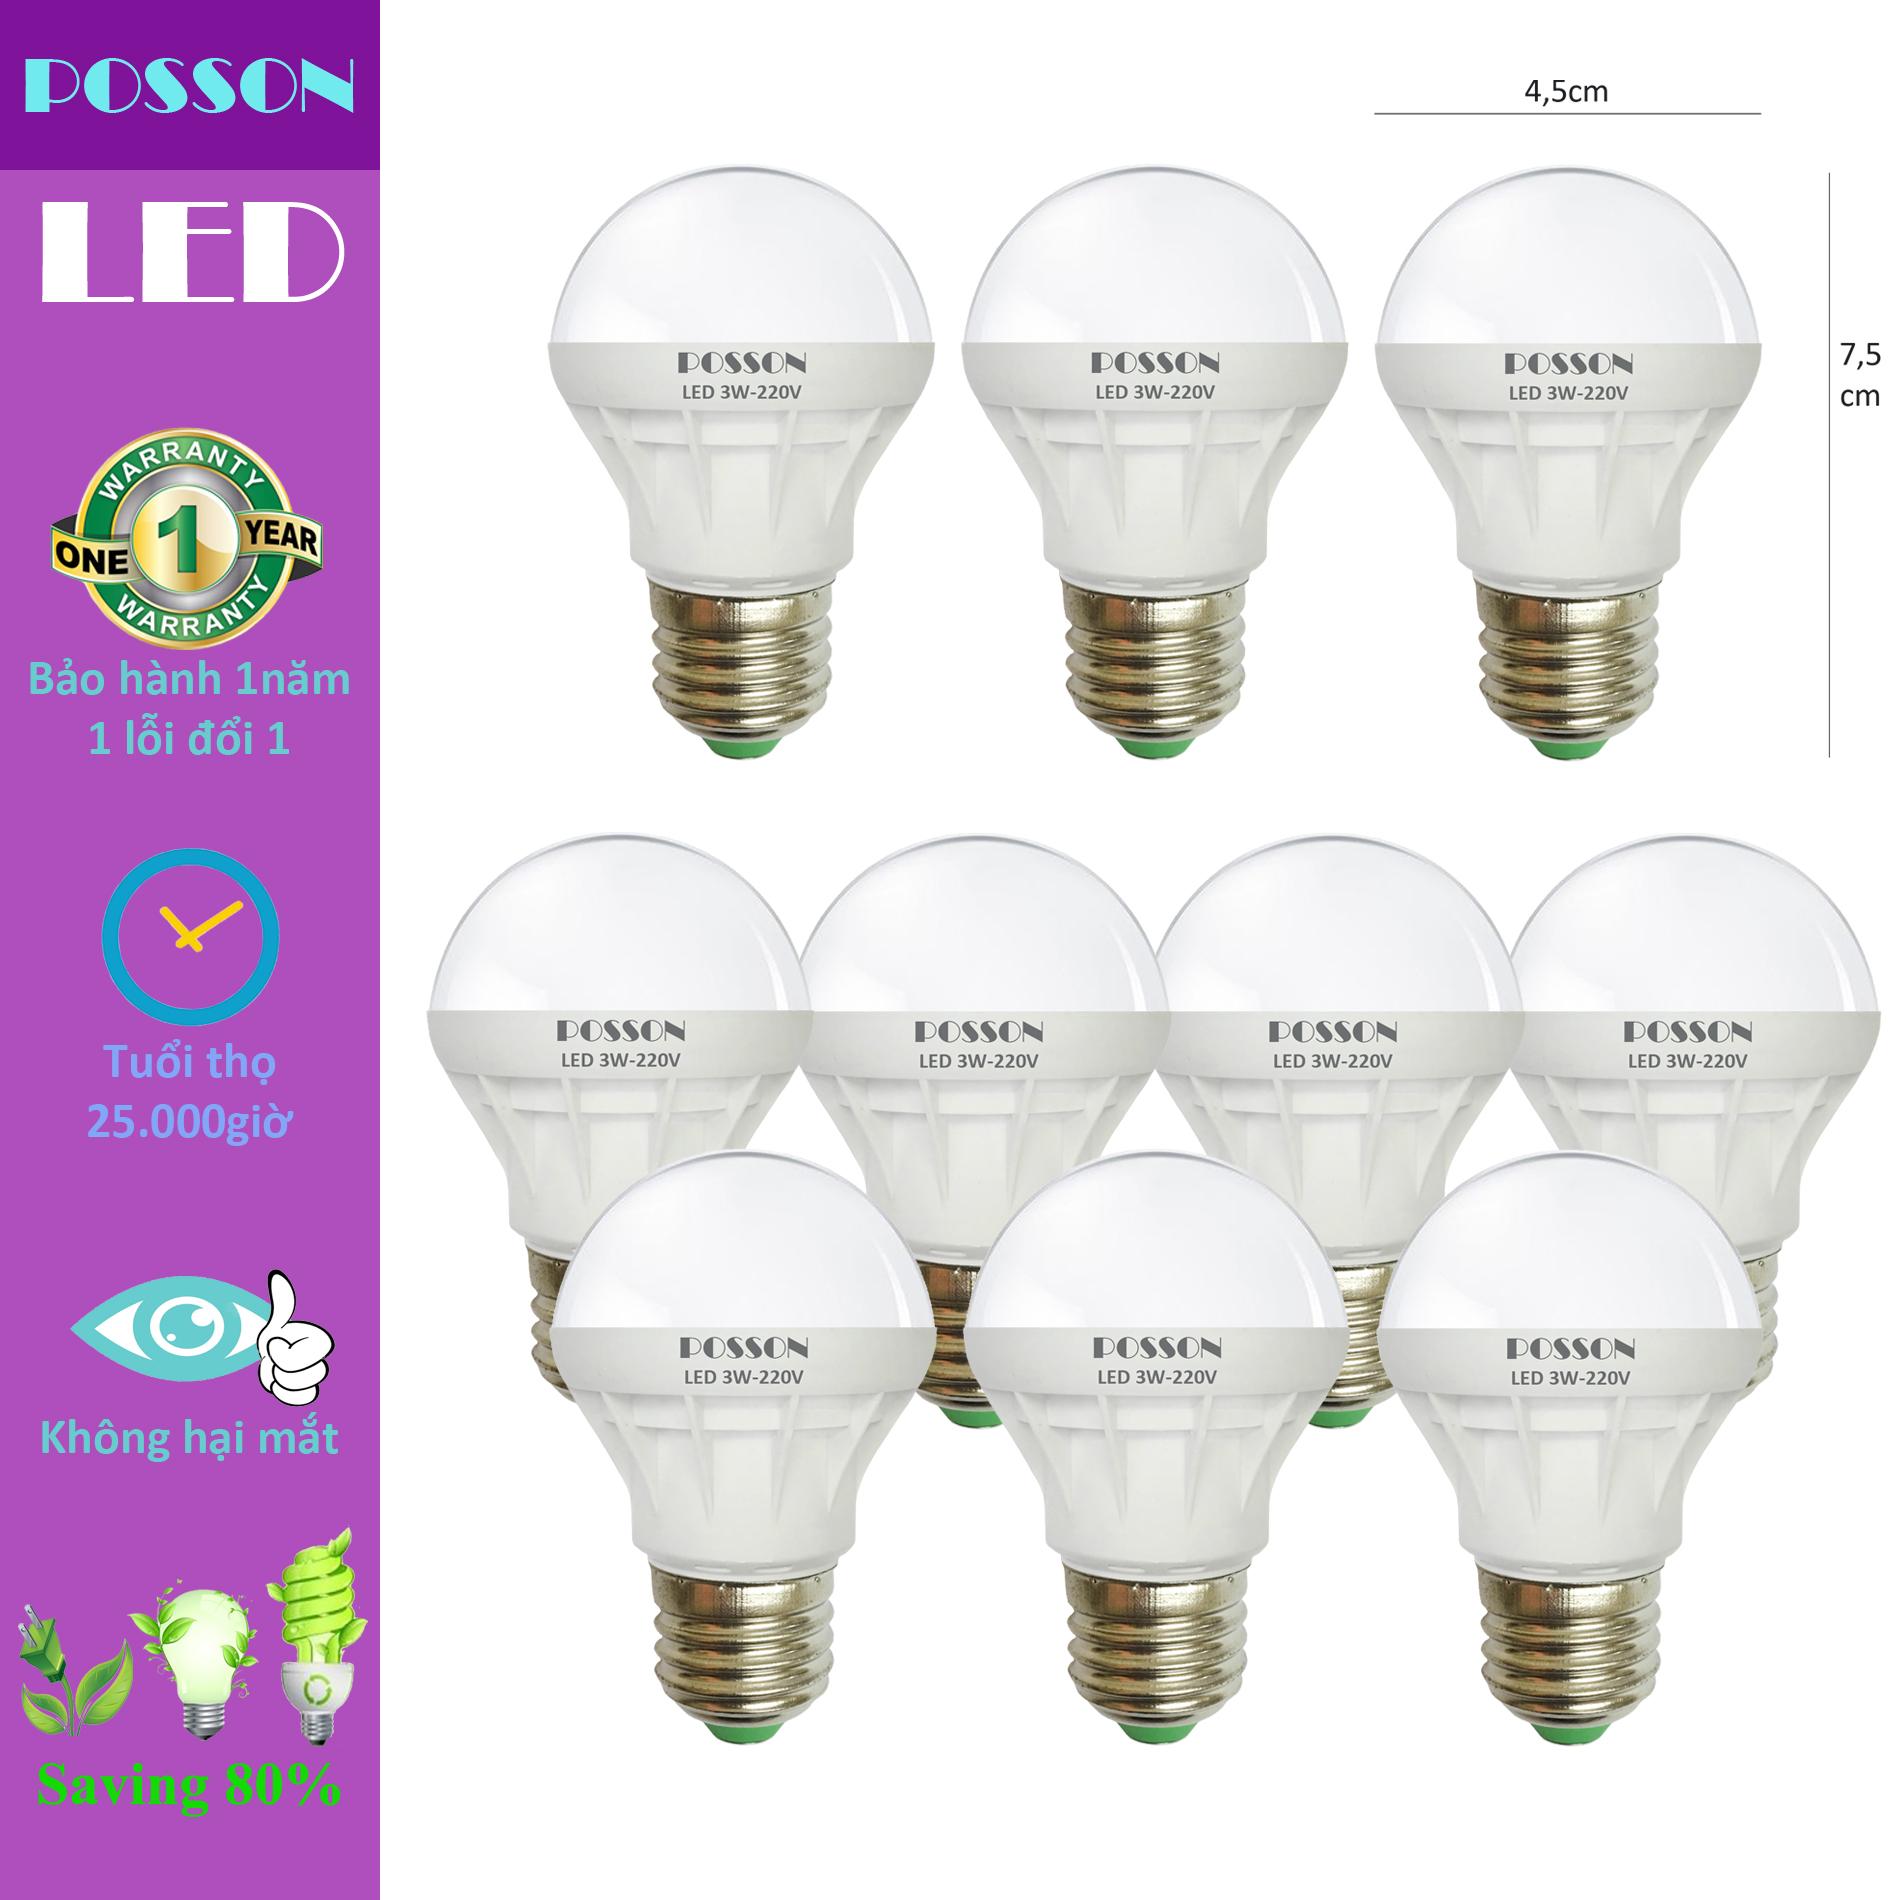 10 Bóng đèn Led 3W tiết kiệm điện sáng trắng Posson LB-E3